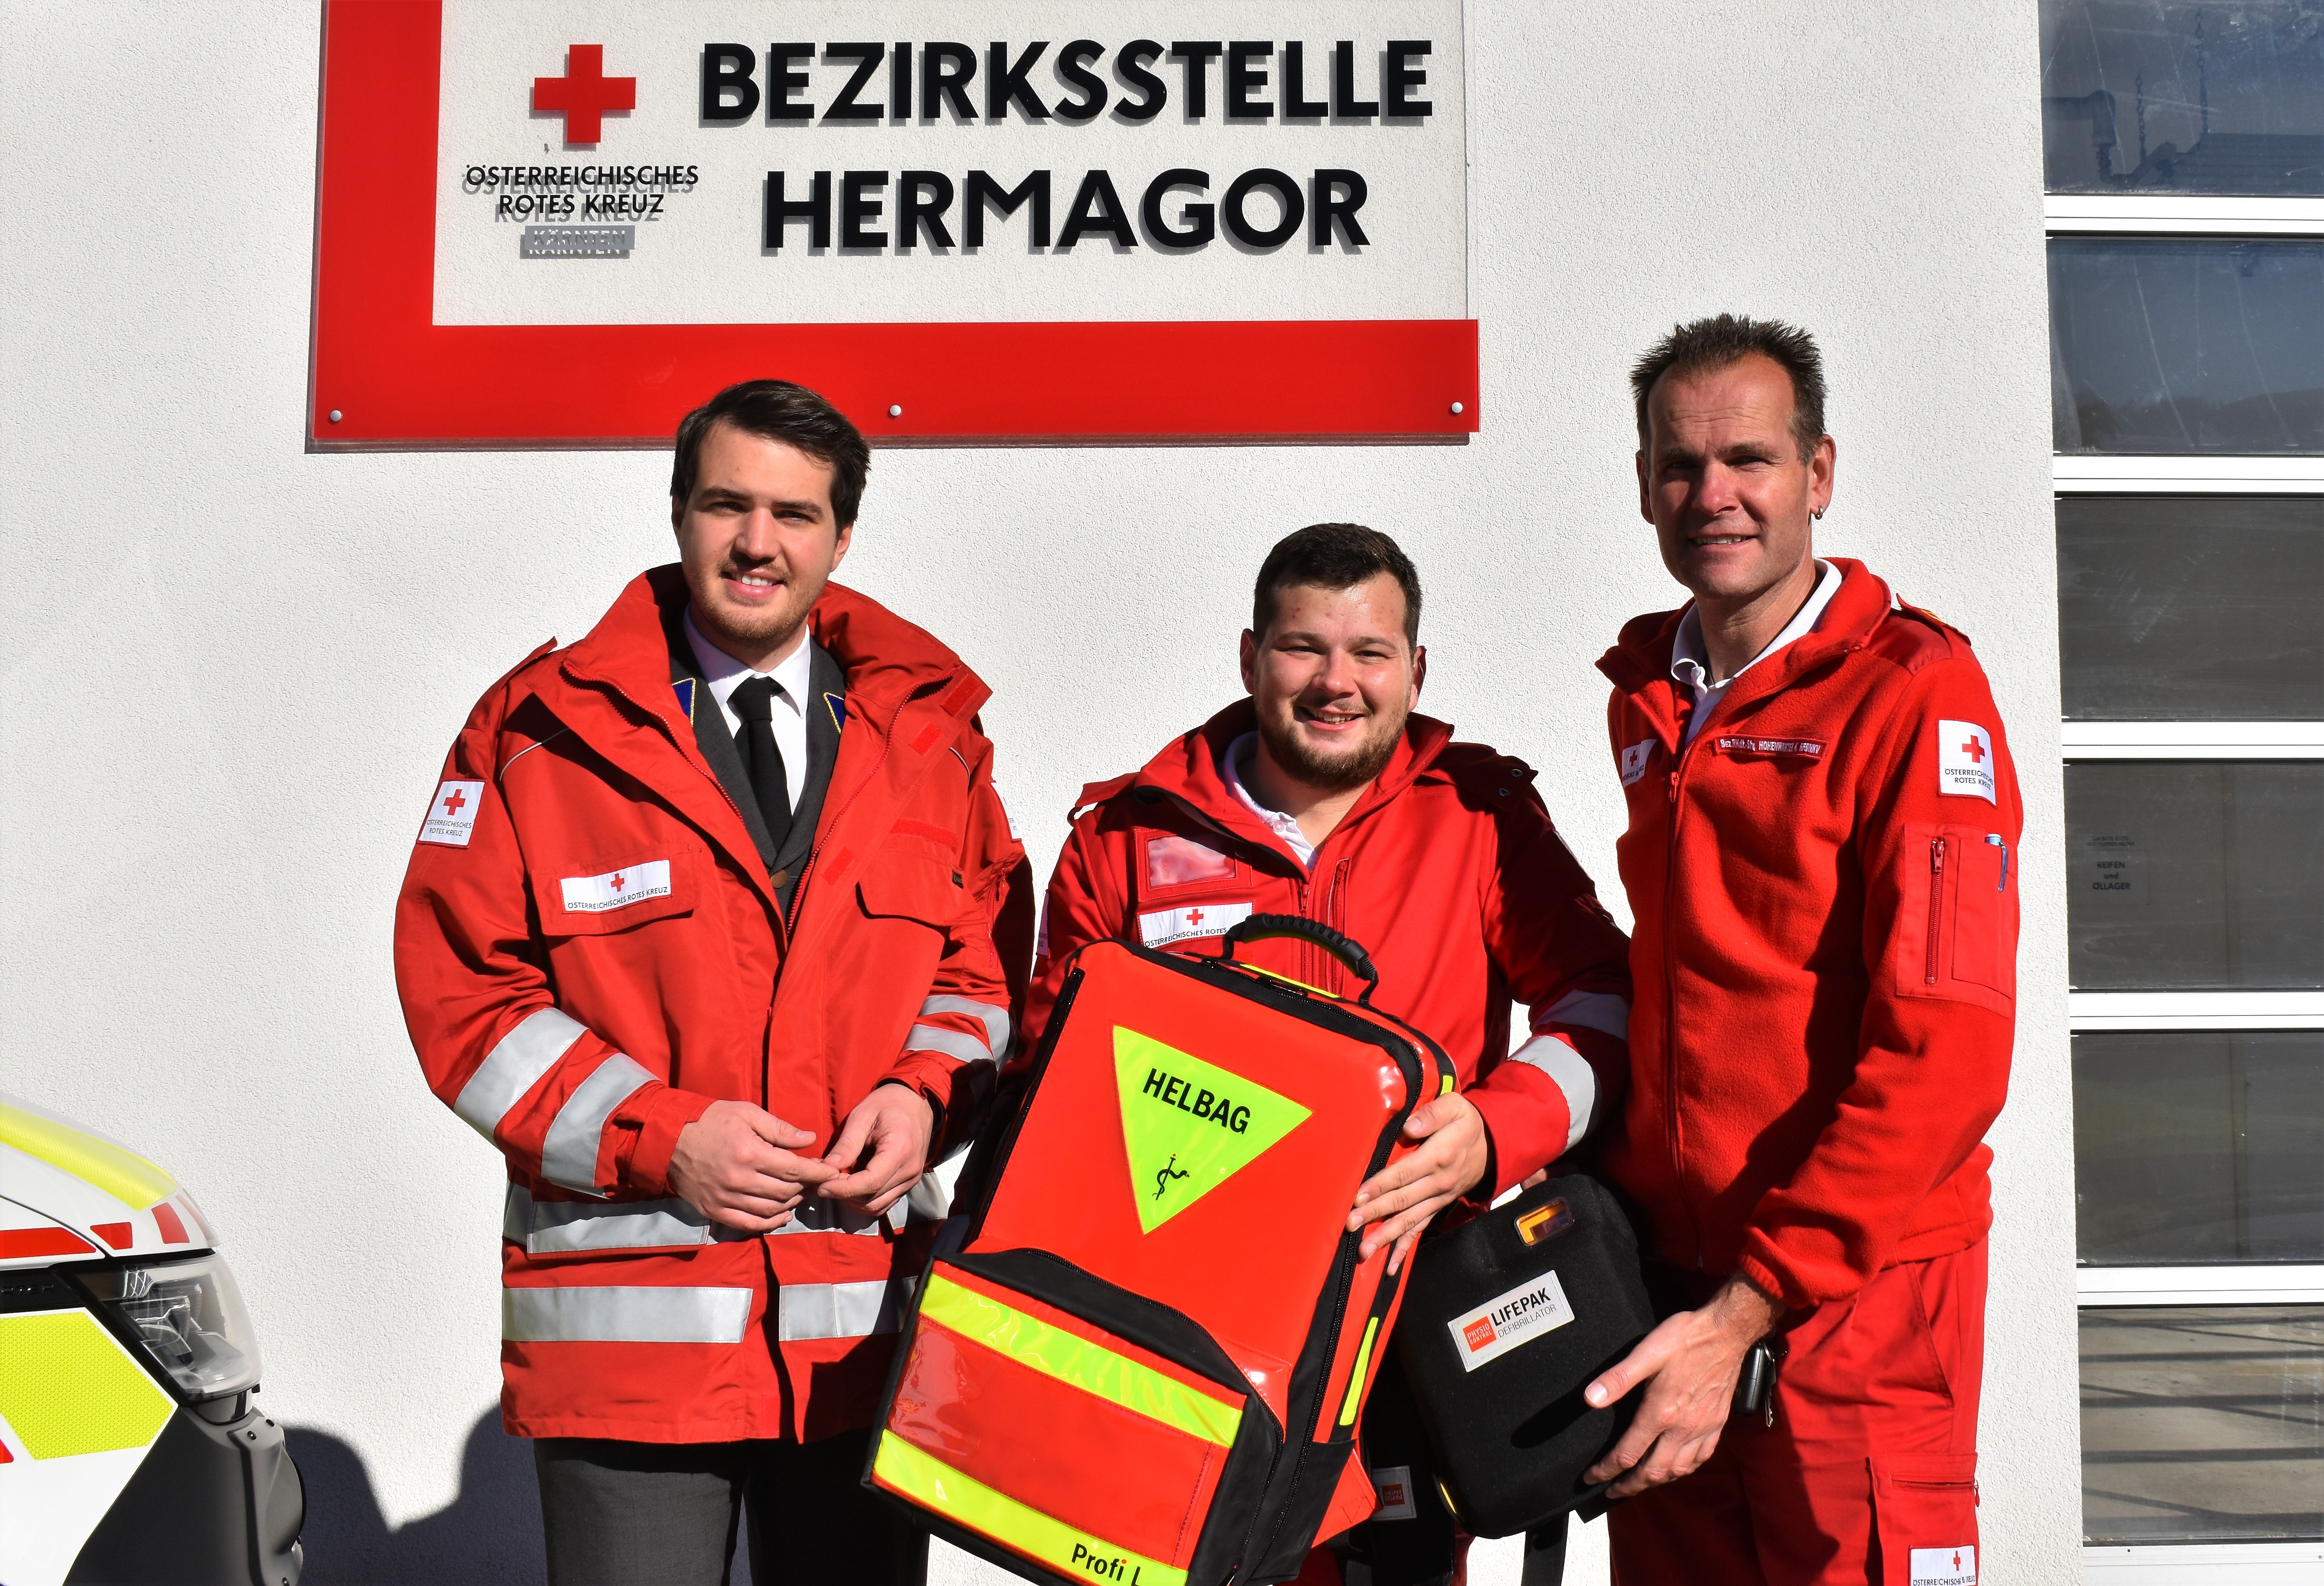 Bezirkstellenleiter Luca Burgstaller, First Responder Florian Umfahrer und Karlheinz Hohenwarter, First Responder Beauftragter.